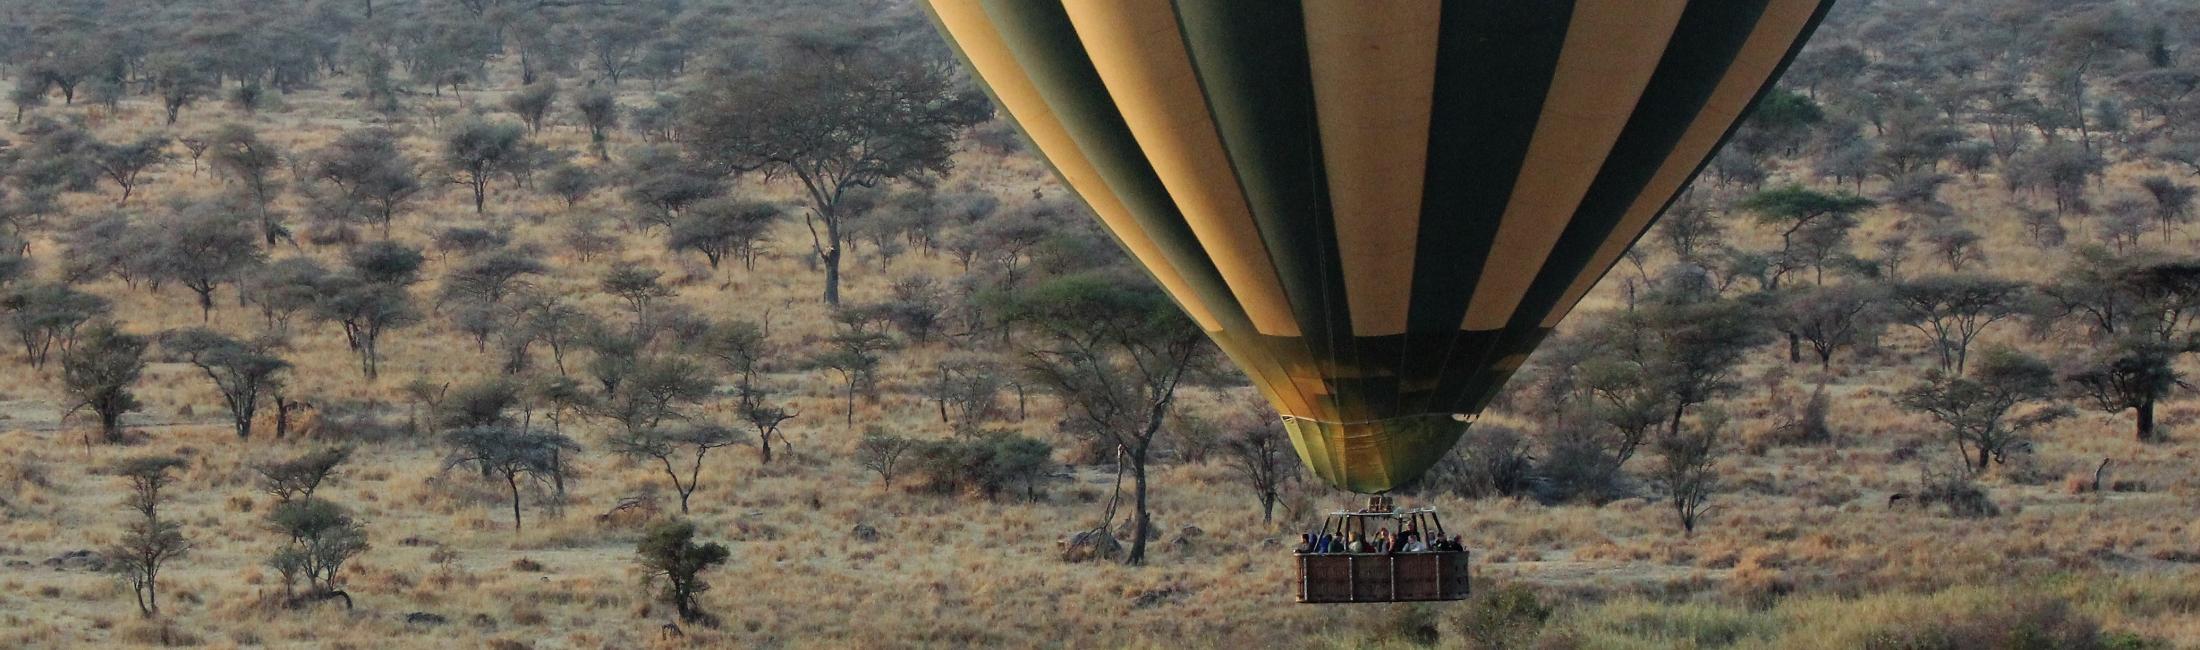 Balloon Safari (Murchison Falls, Uganda)